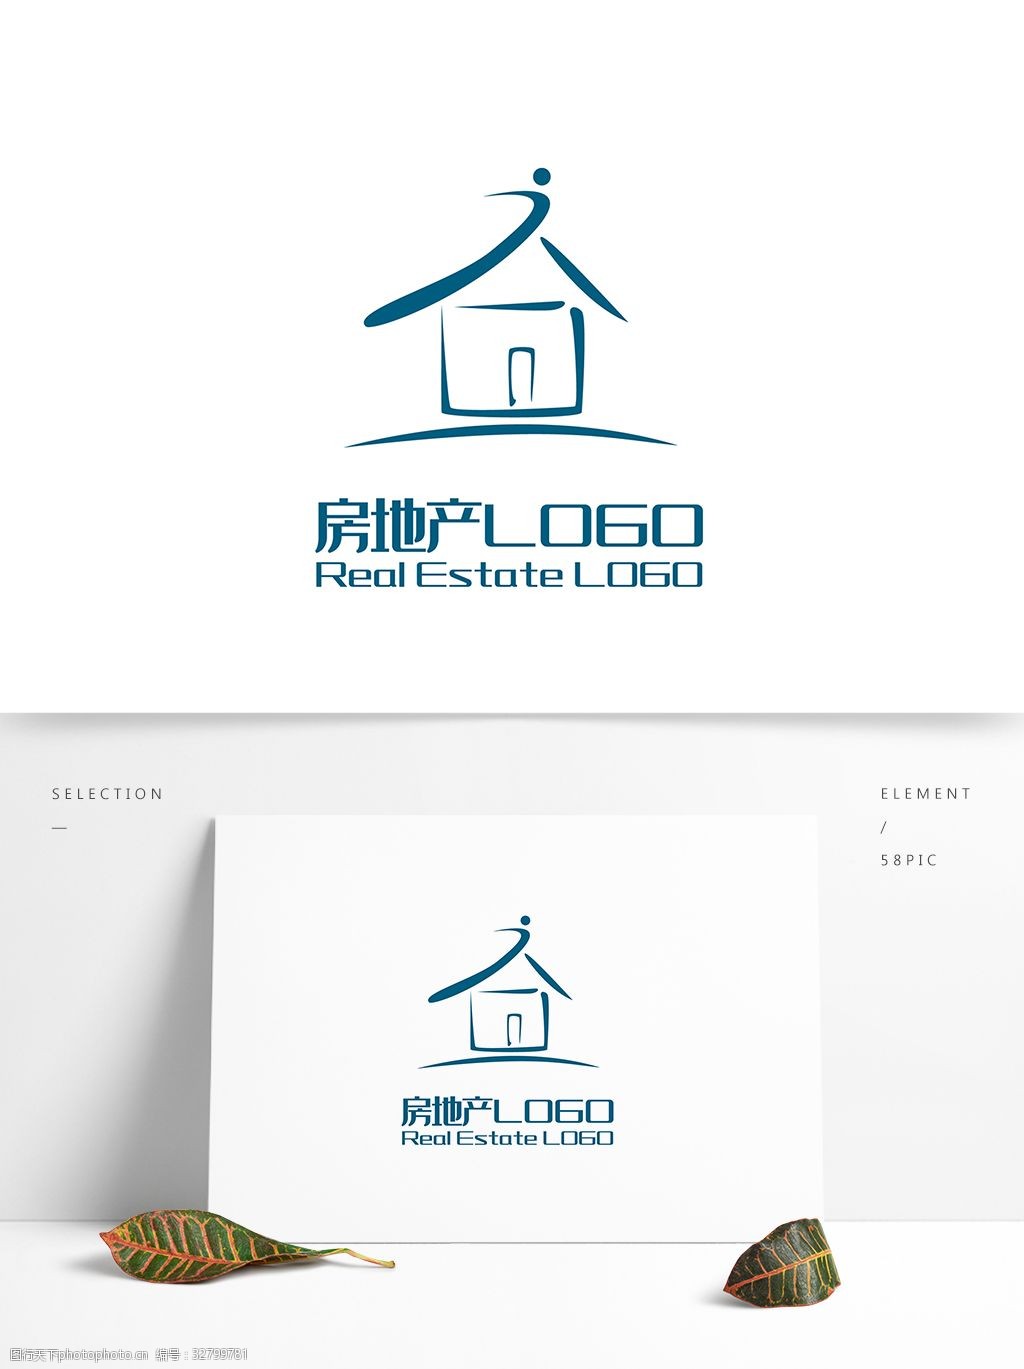 原创创意简约j字房子房地产logo标志